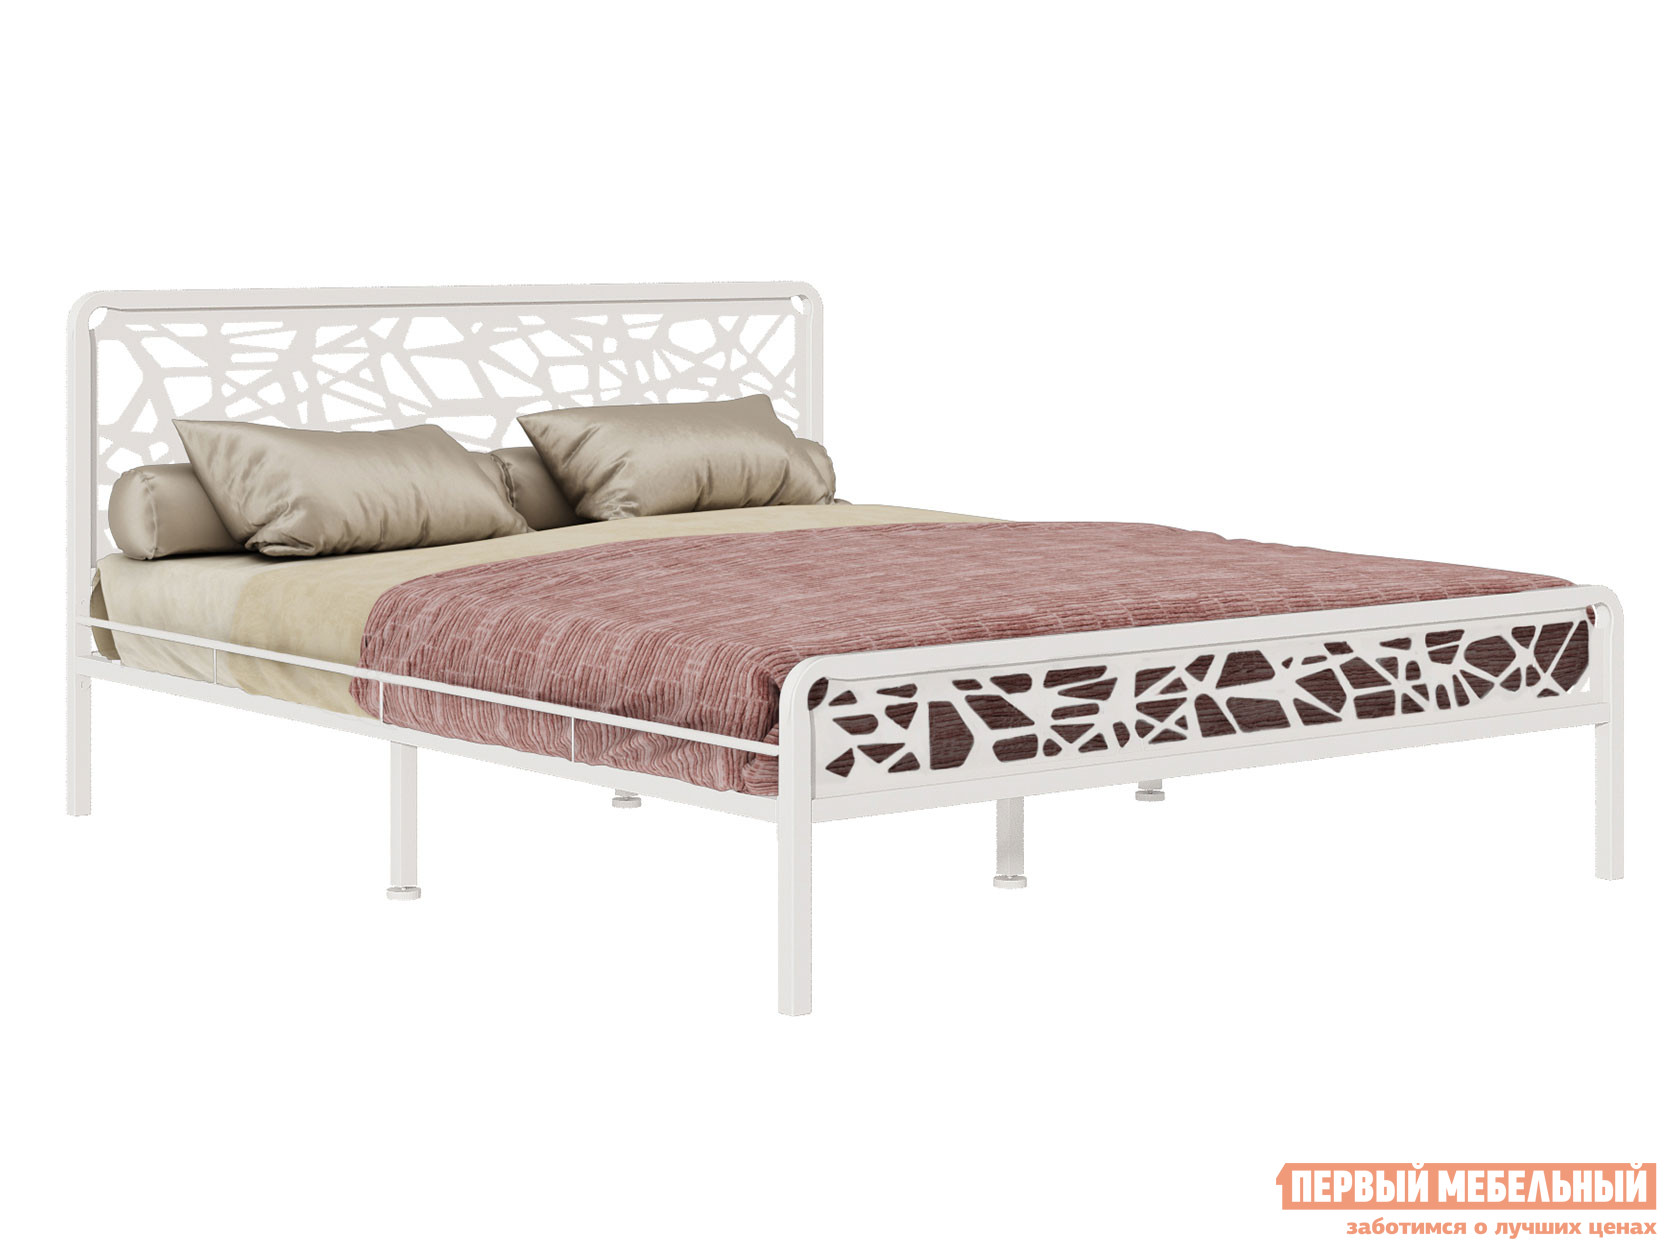 Односпальная кровать  Орион Белый, металл, 90х200 см